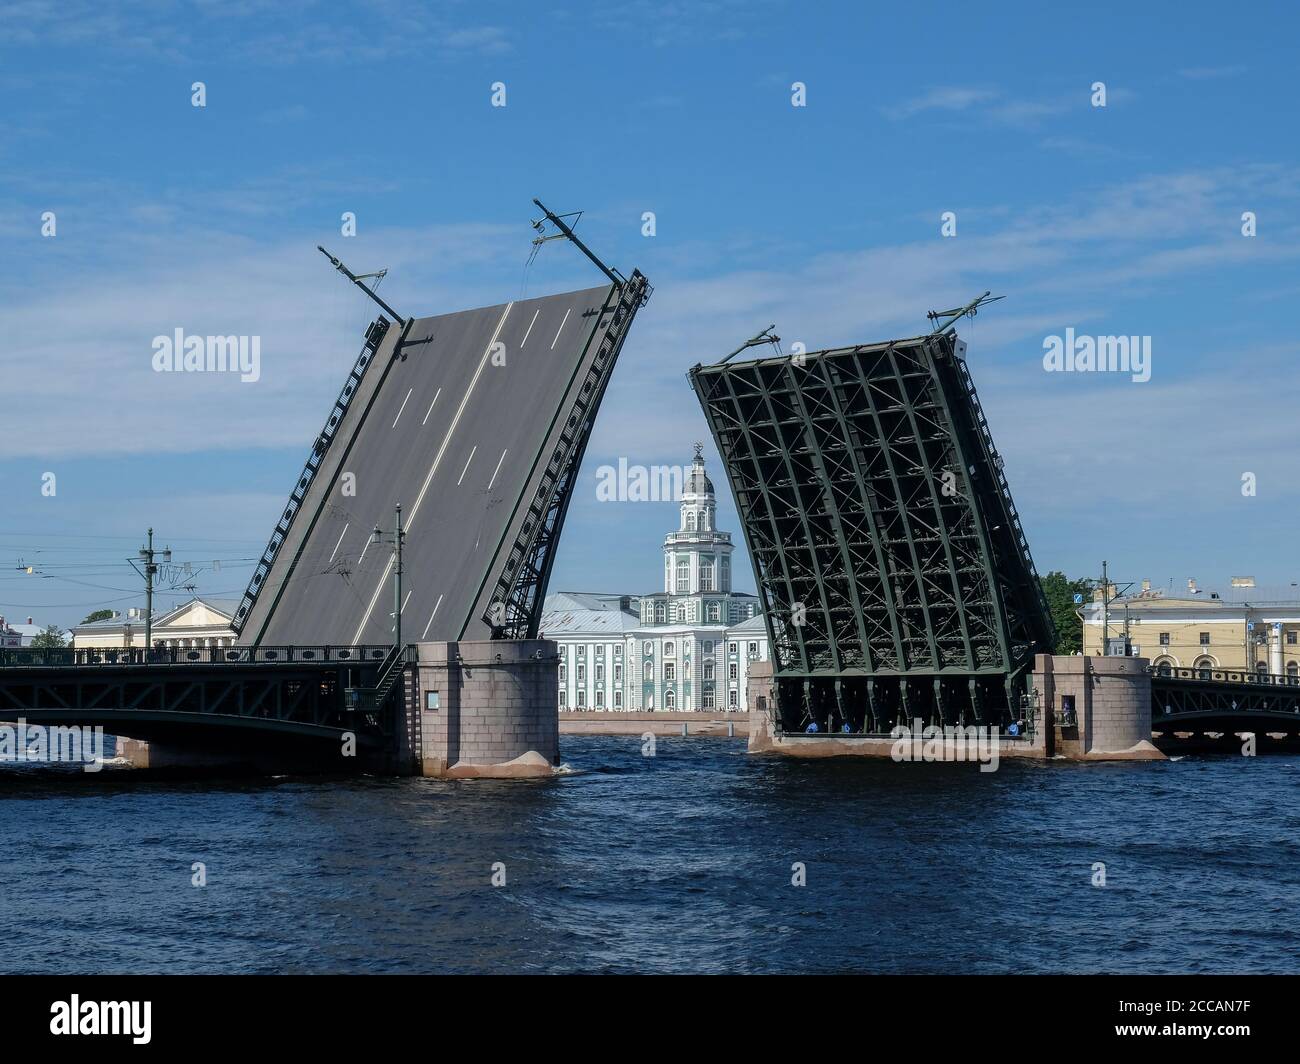 Zugbrücke in St. Petersburg, Russland. Das Kunstkameragebäude zwischen den Öffnungen der Brücke. Stockfoto